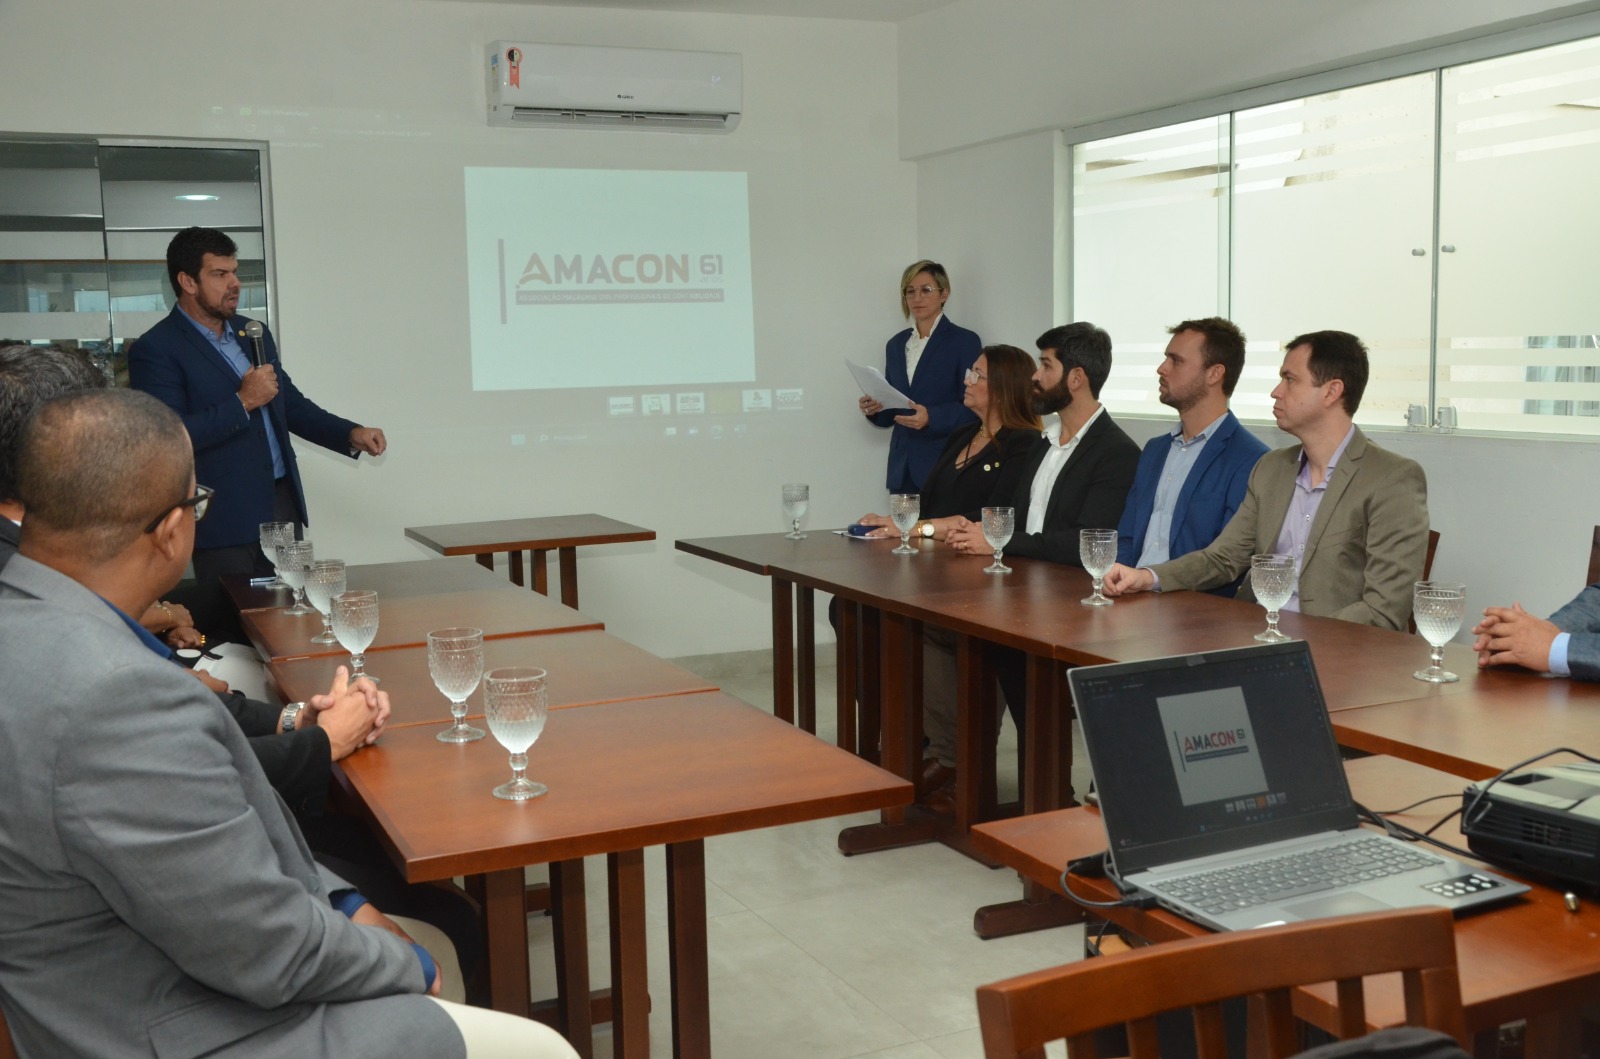 O prefeito Welberth Rezende destacou a importância da parceria com instituições como a Amacon e o Conselho Regional de Contabilidade